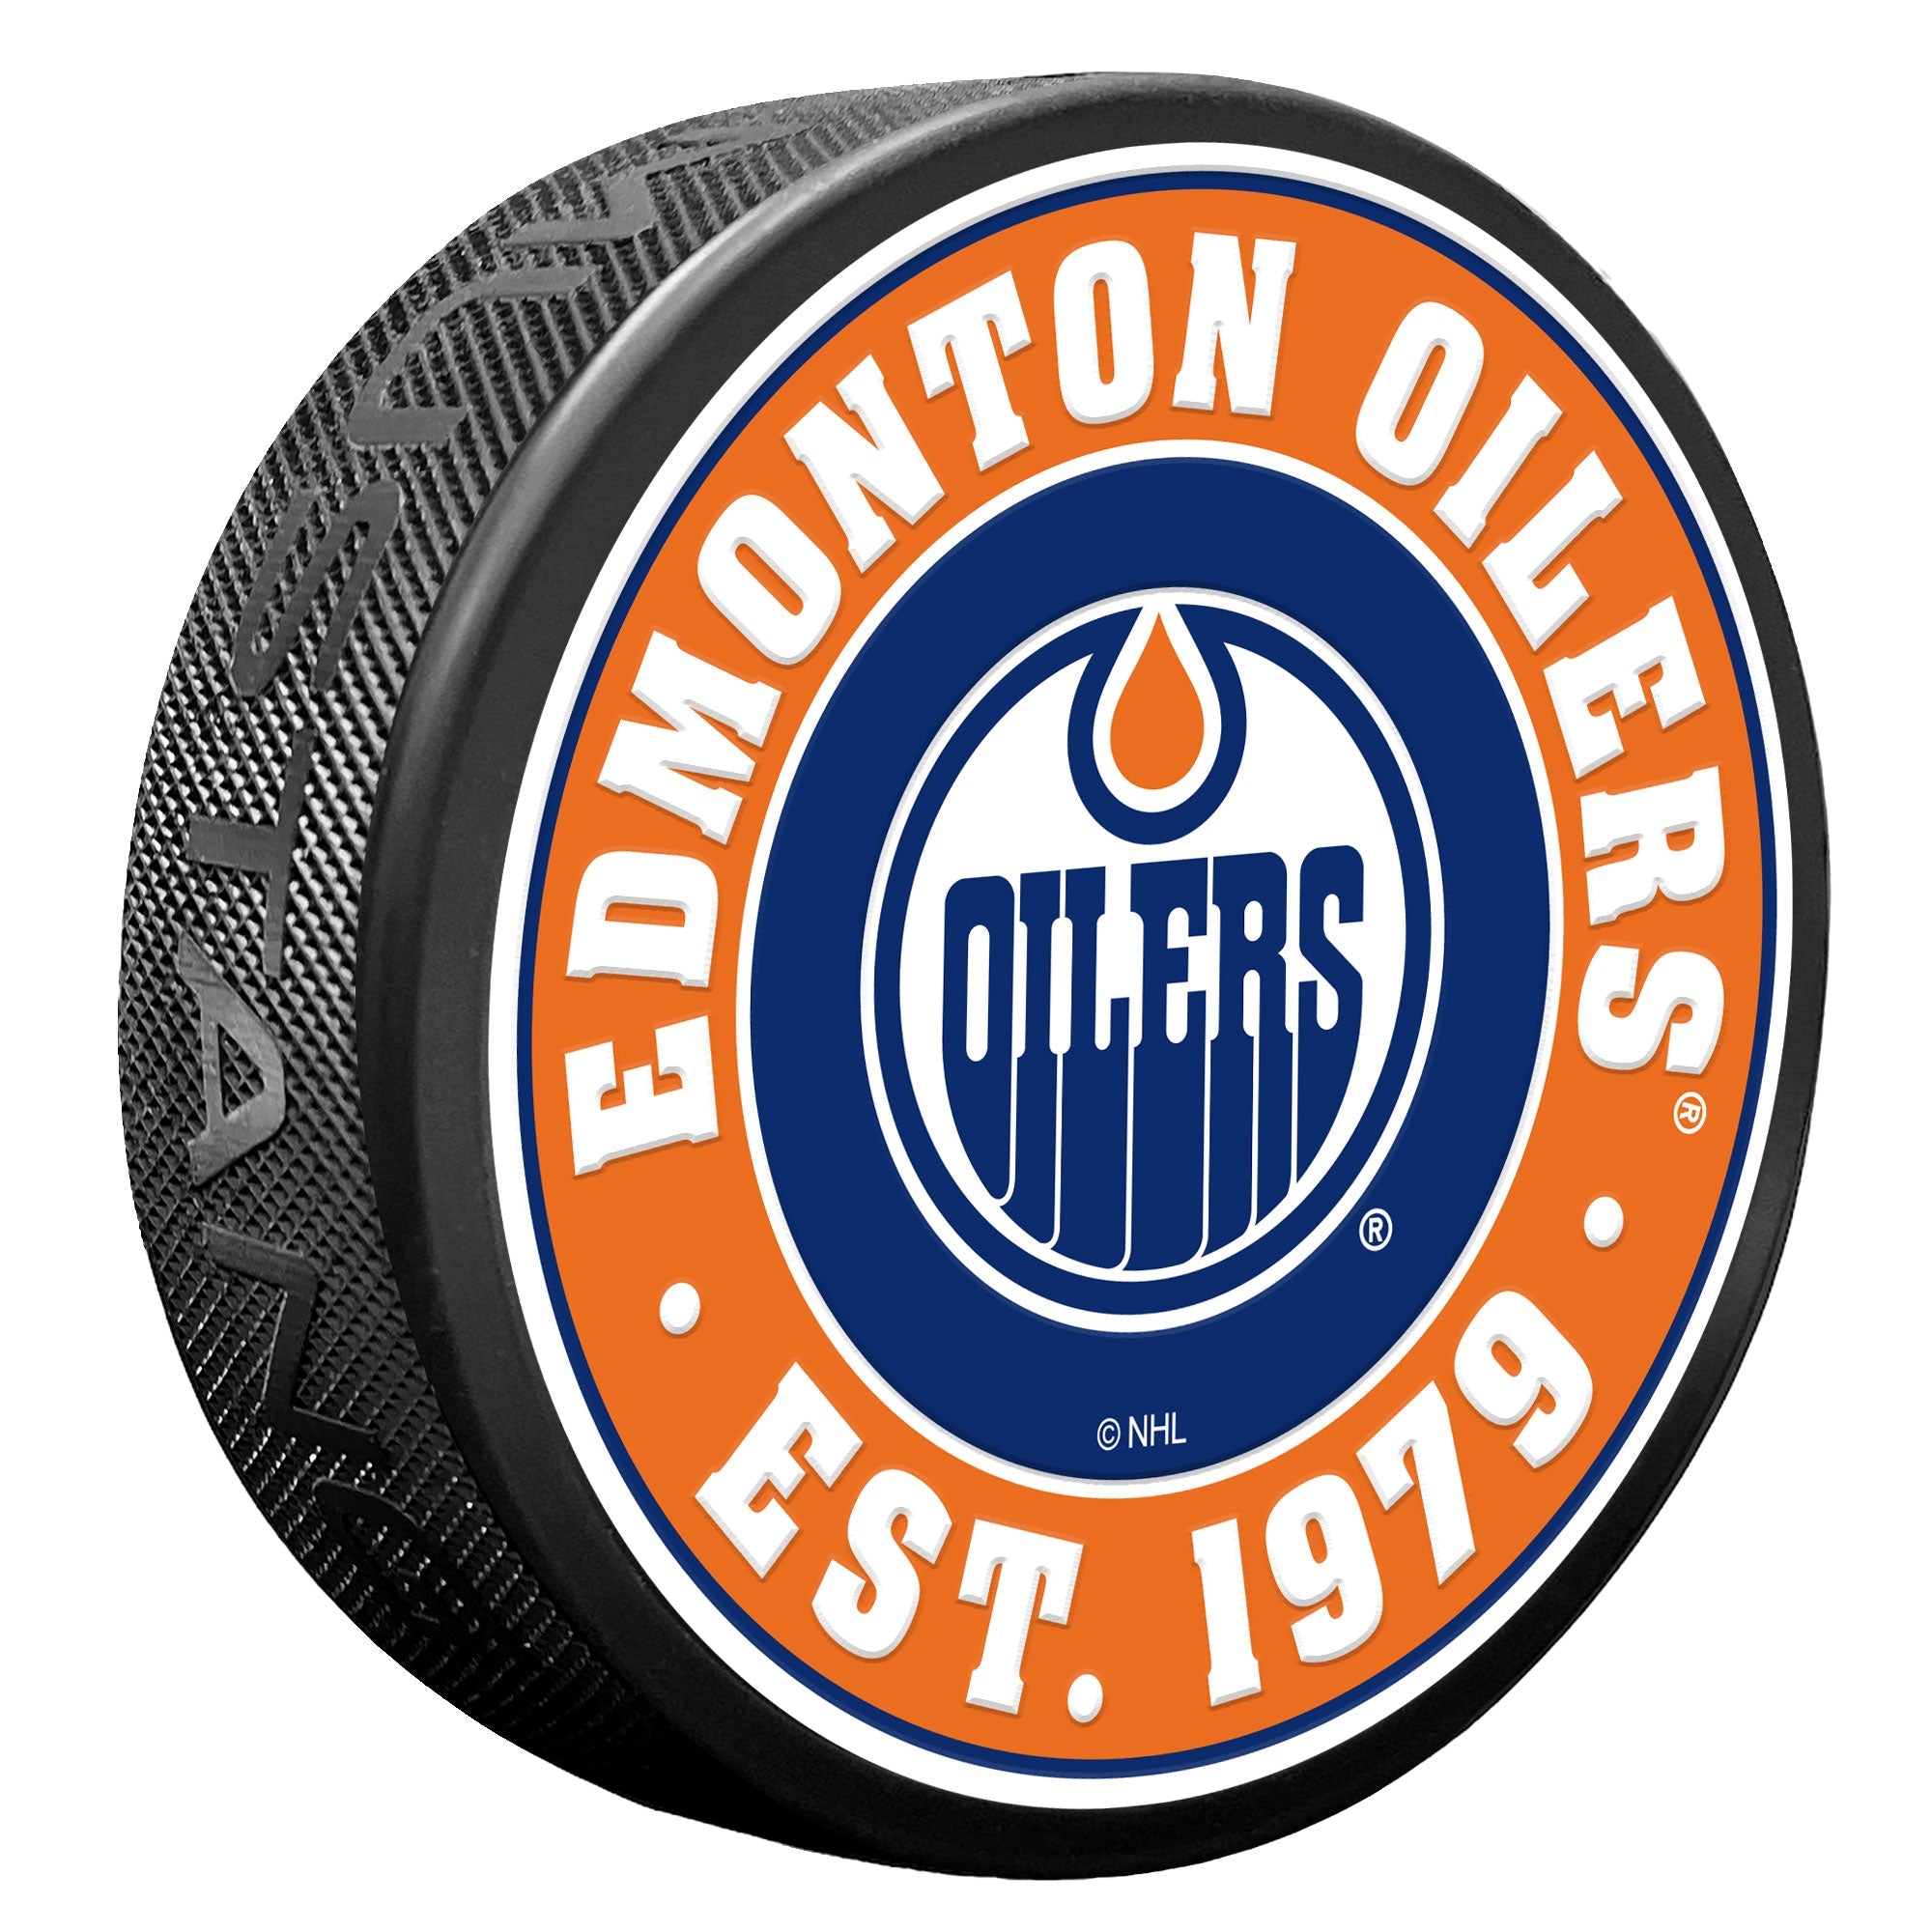 Oilers branded merchandise